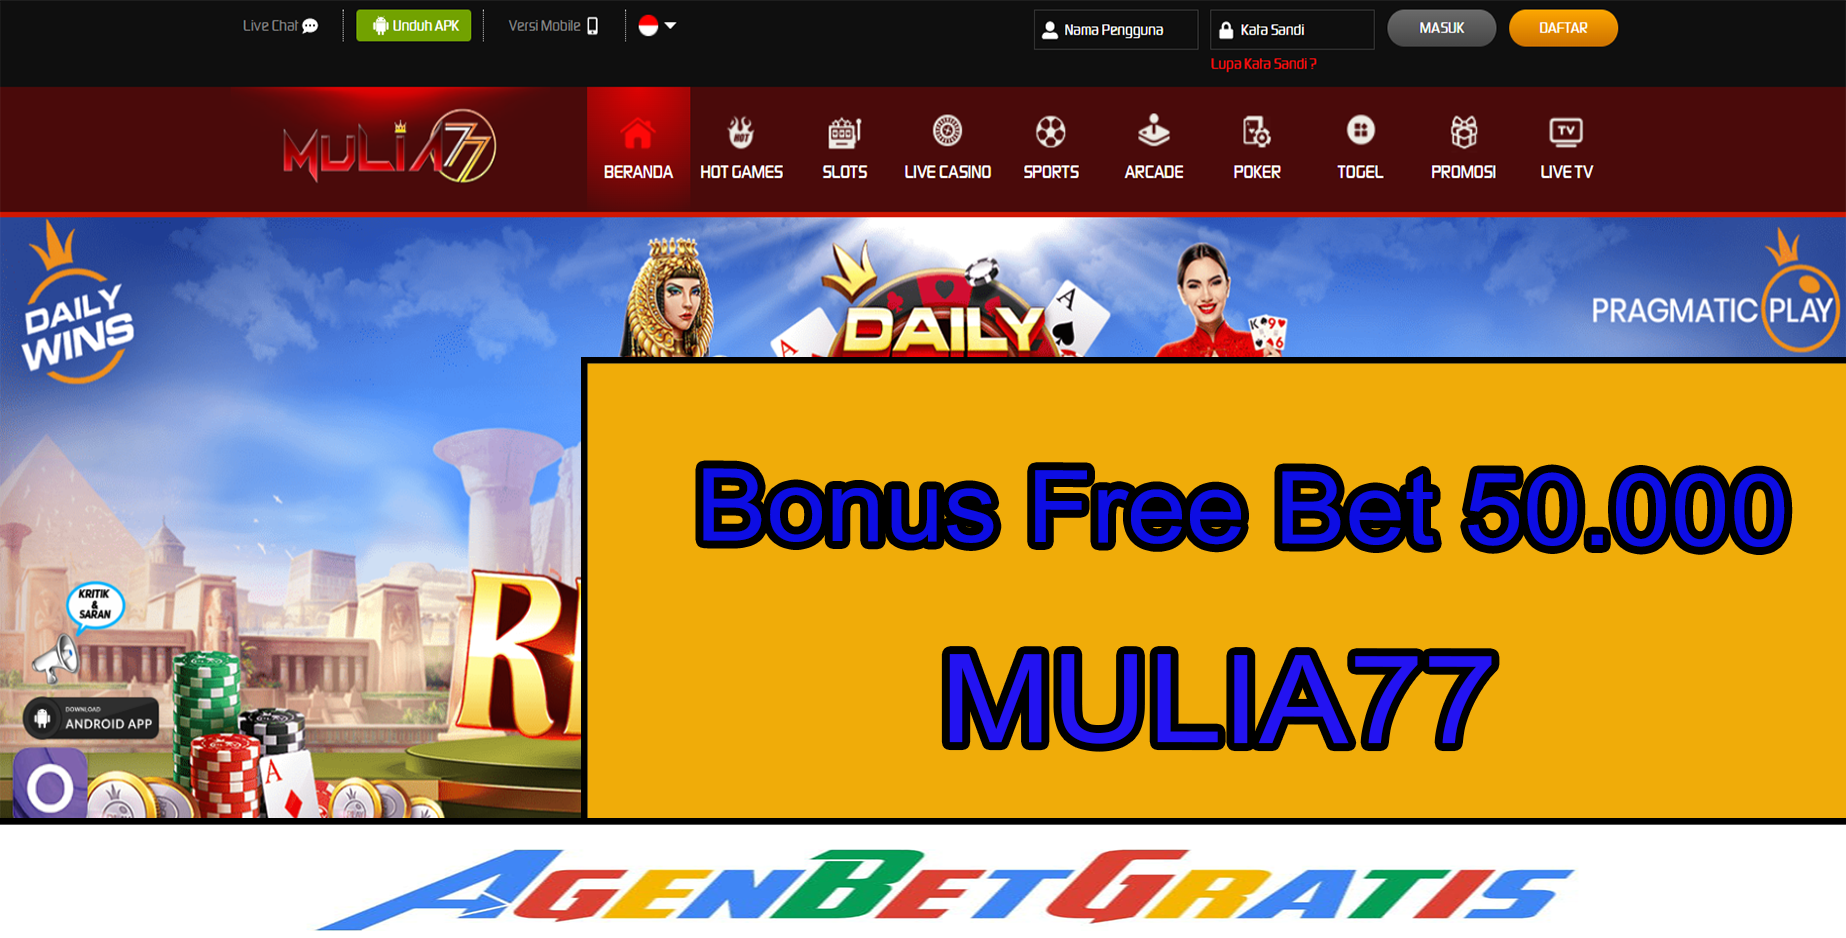 MULIA77 - Bonus FreeBet 50.000